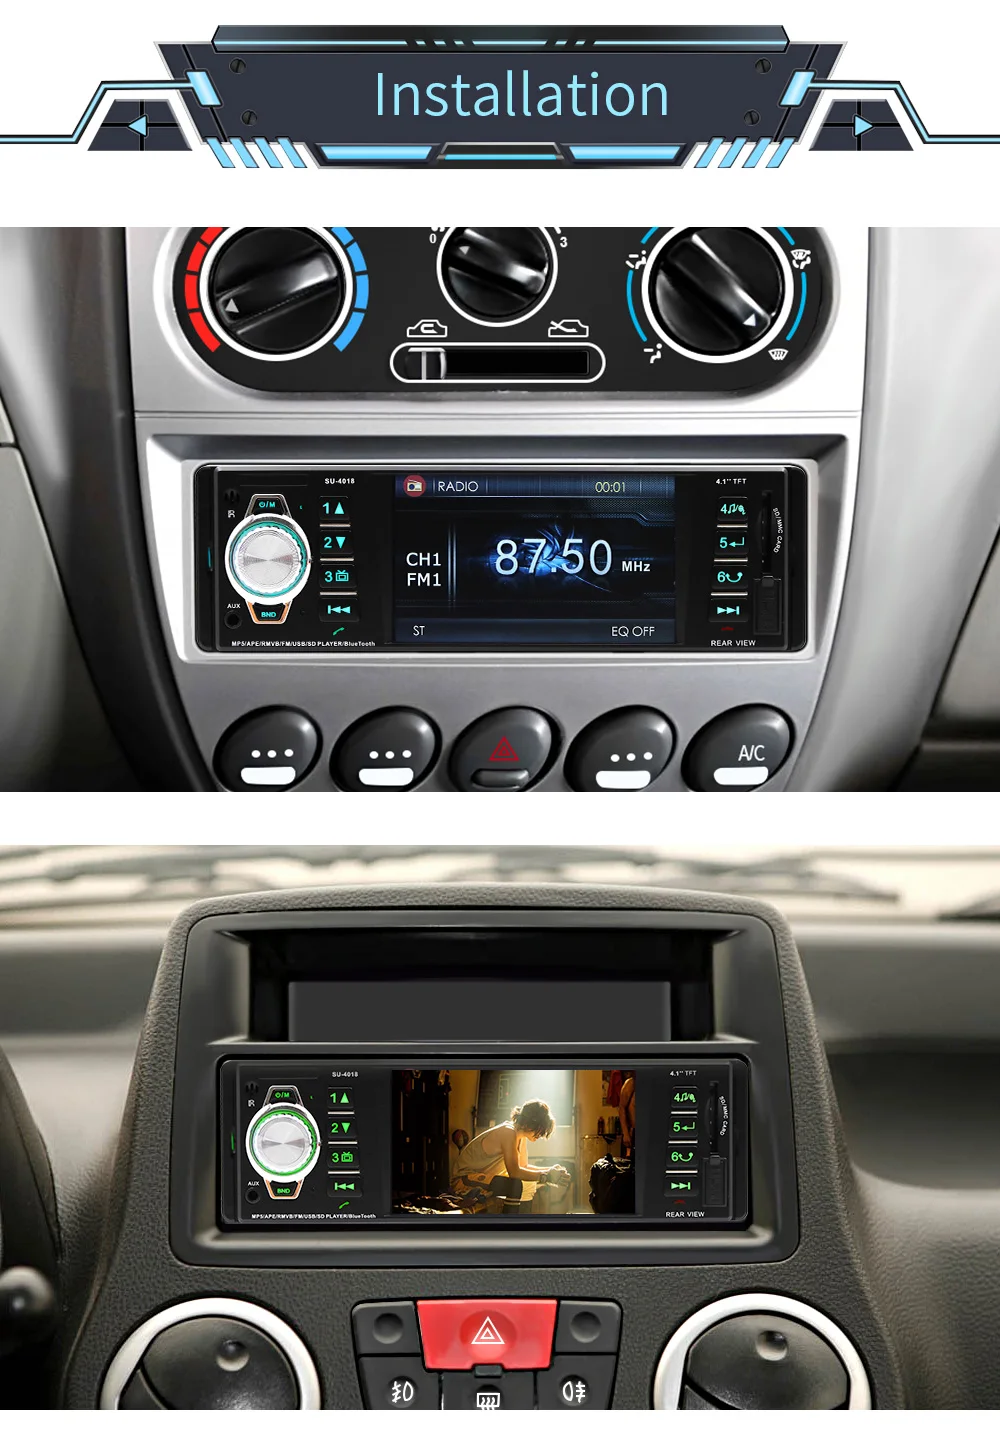 Автомобильный стерео Мультимедийный плеер радио 1din автомобильный радиоприемник с Bluetooth AUX-IN MP3 FM/USB/1 Din/SWC пульт дистанционного управления 12 В автомобильная аудиосистема радио